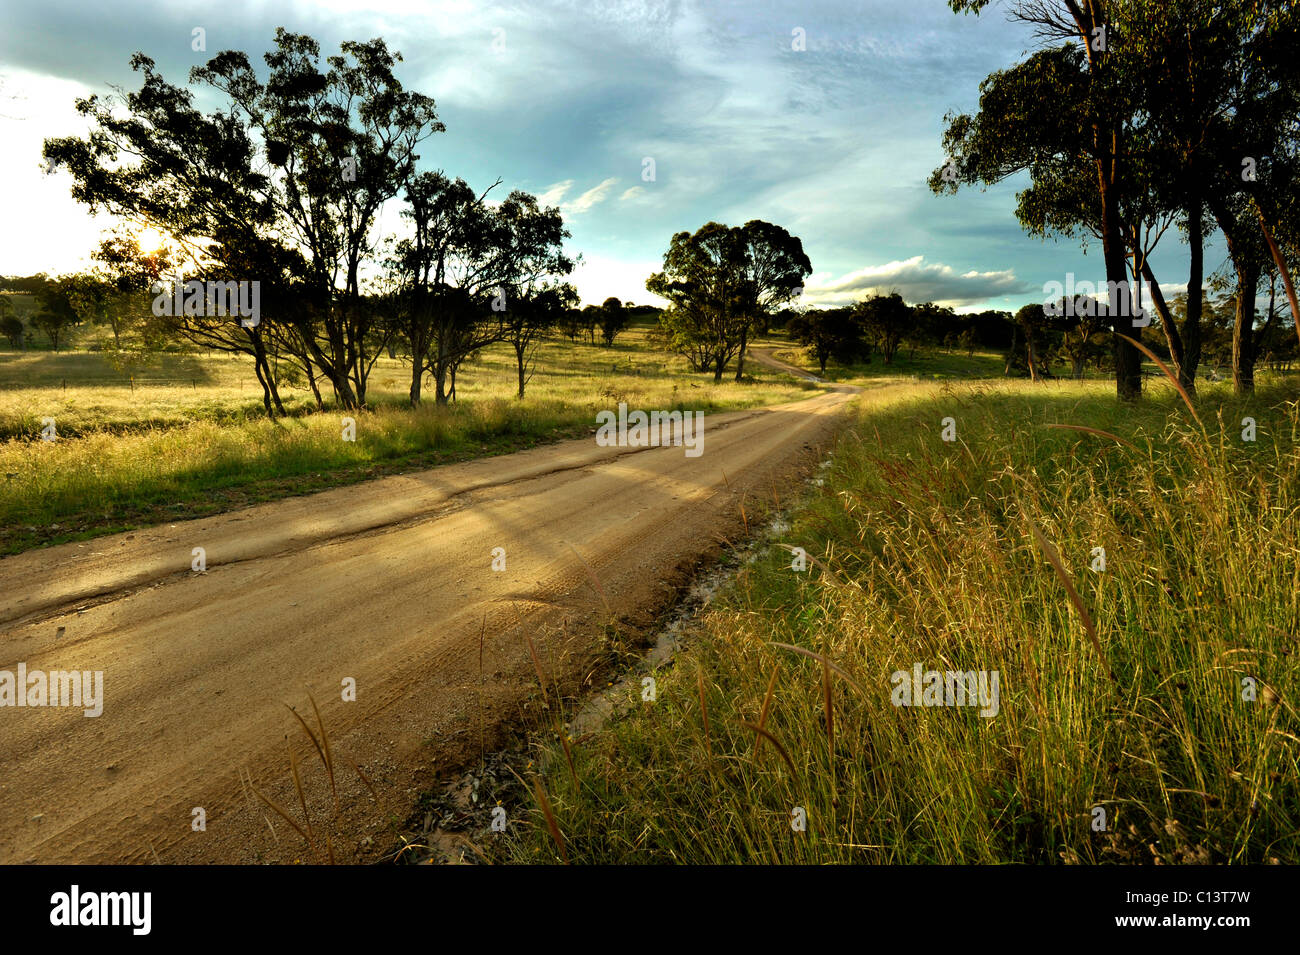 Eine Landstraße bei "Bolivien" in New South Wales Australien Stockfoto